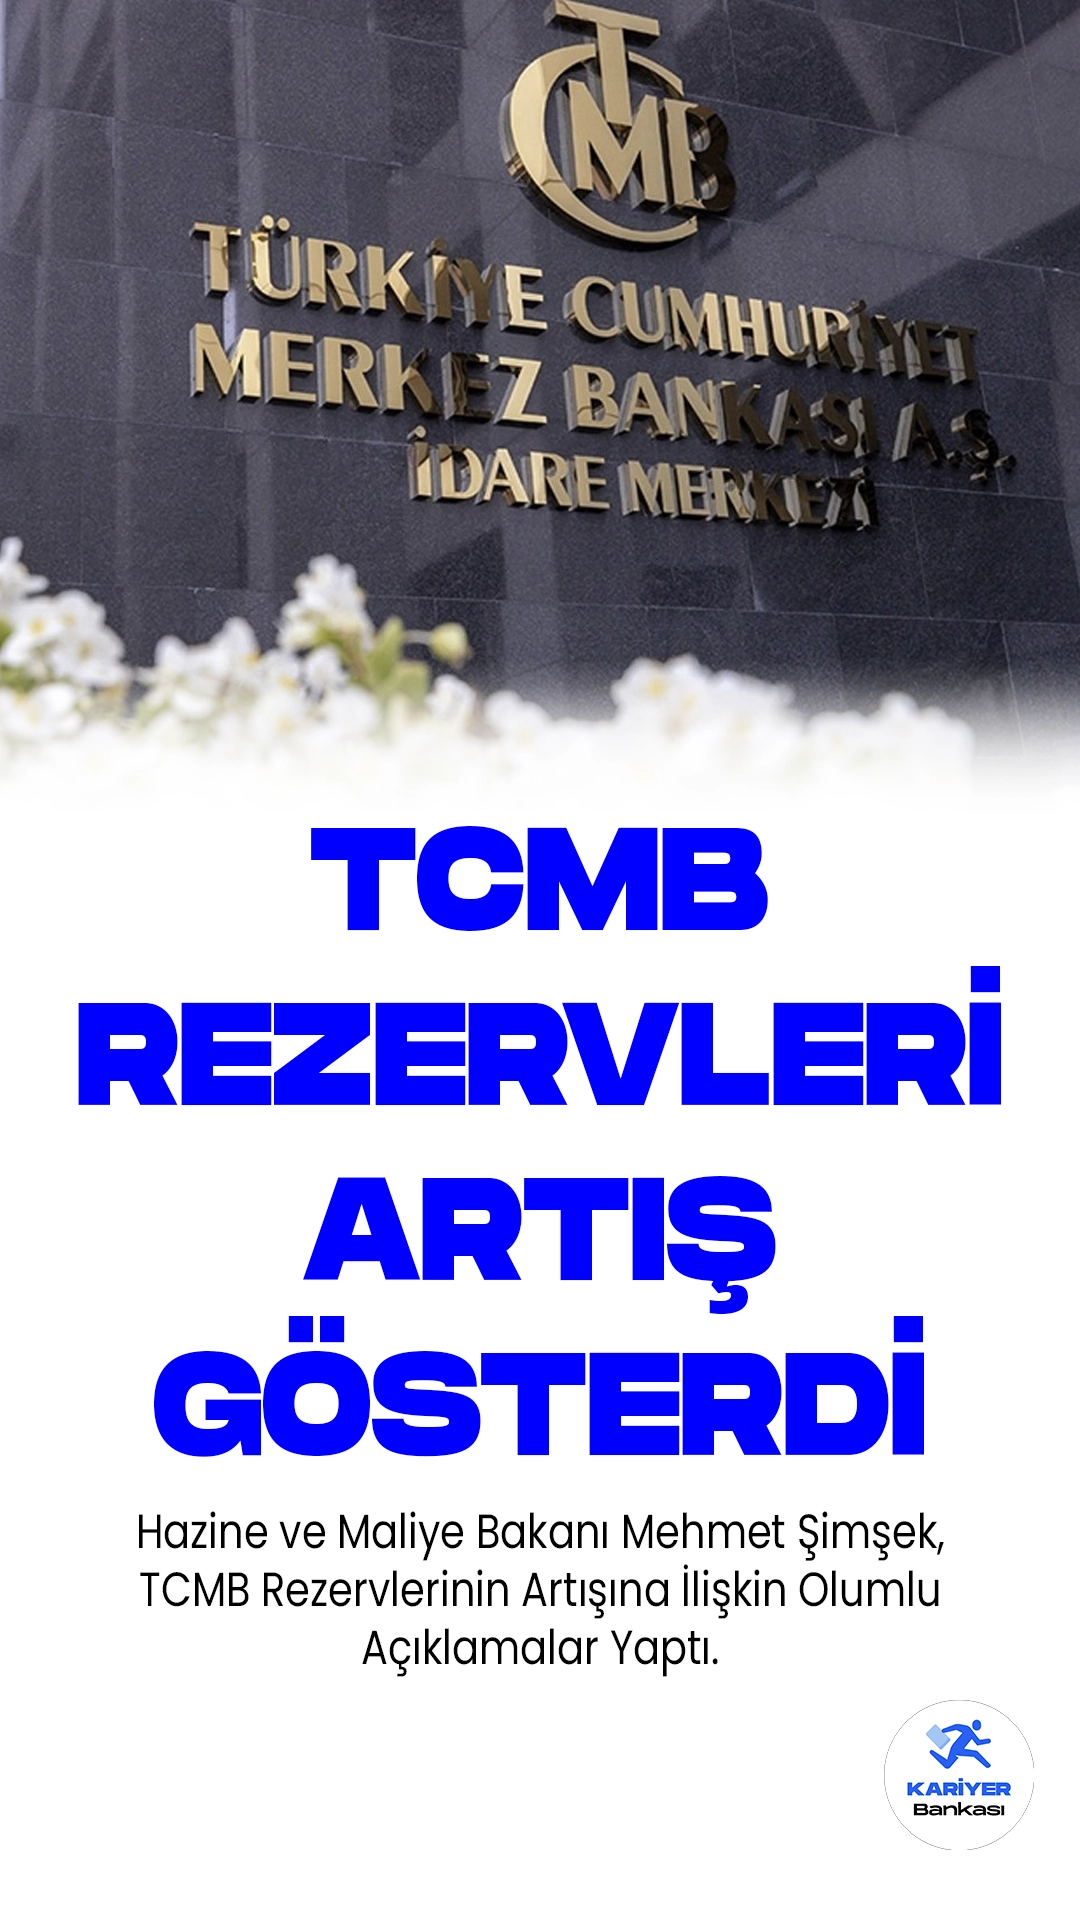 Hazine ve Maliye Bakanı Mehmet Şimşek, TCMB Rezervlerinin Artışına İlişkin Olumlu Açıklamalar Yaptı.Hazine ve Maliye Bakanı Mehmet Şimşek, Merkez Bankası (TCMB) rezervlerindeki son artışı Twitter hesabından duyurdu. Şimşek, rezervlerdeki olumlu gelişmeleri vurgulayarak, 26 Mayıs'ta 98,5 milyar dolar olan TCMB rezervlerinin 30 Haziran'da 108,6 milyar dolar seviyesine yükseldiğini belirtti. Aynı dönemde net rezervlerin de 14,2 milyar dolarlık bir iyileşme gösterdiği kaydedildi.